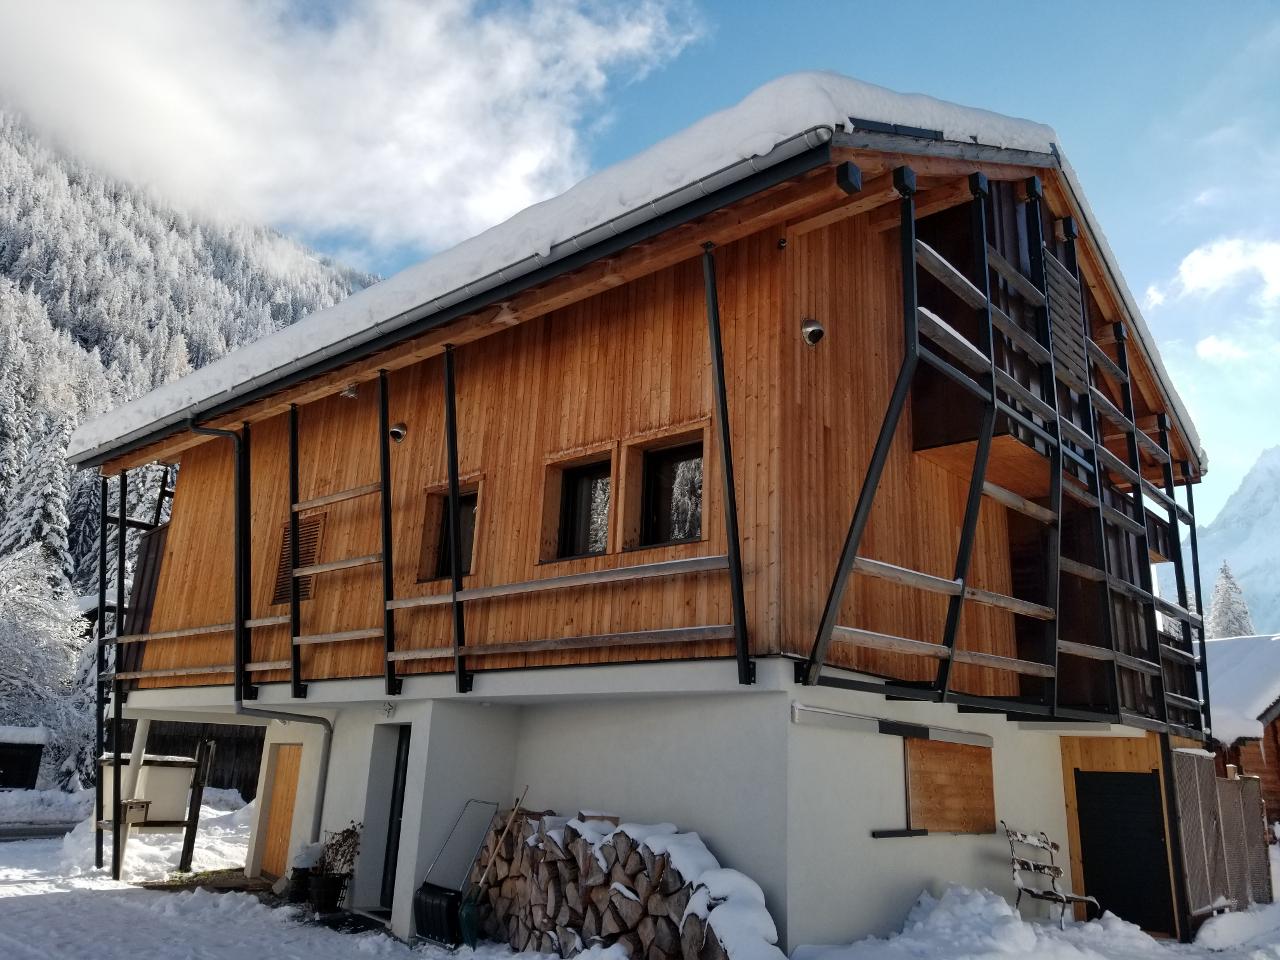 Hôte GreenGo: CHALET WALSER le seul chalet écolo de la vallée de Chamonix Mont Blanc